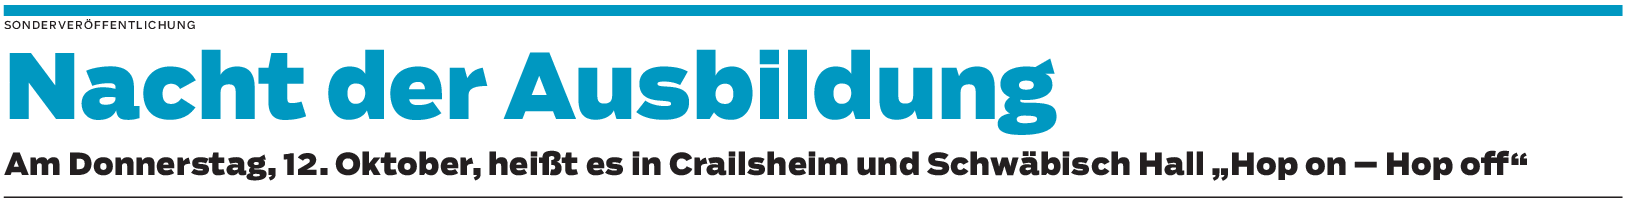 Nacht der Ausbildung in Crailsheim und Schwäbisch Hall: Azubis achten auf Nachhaltigkeit